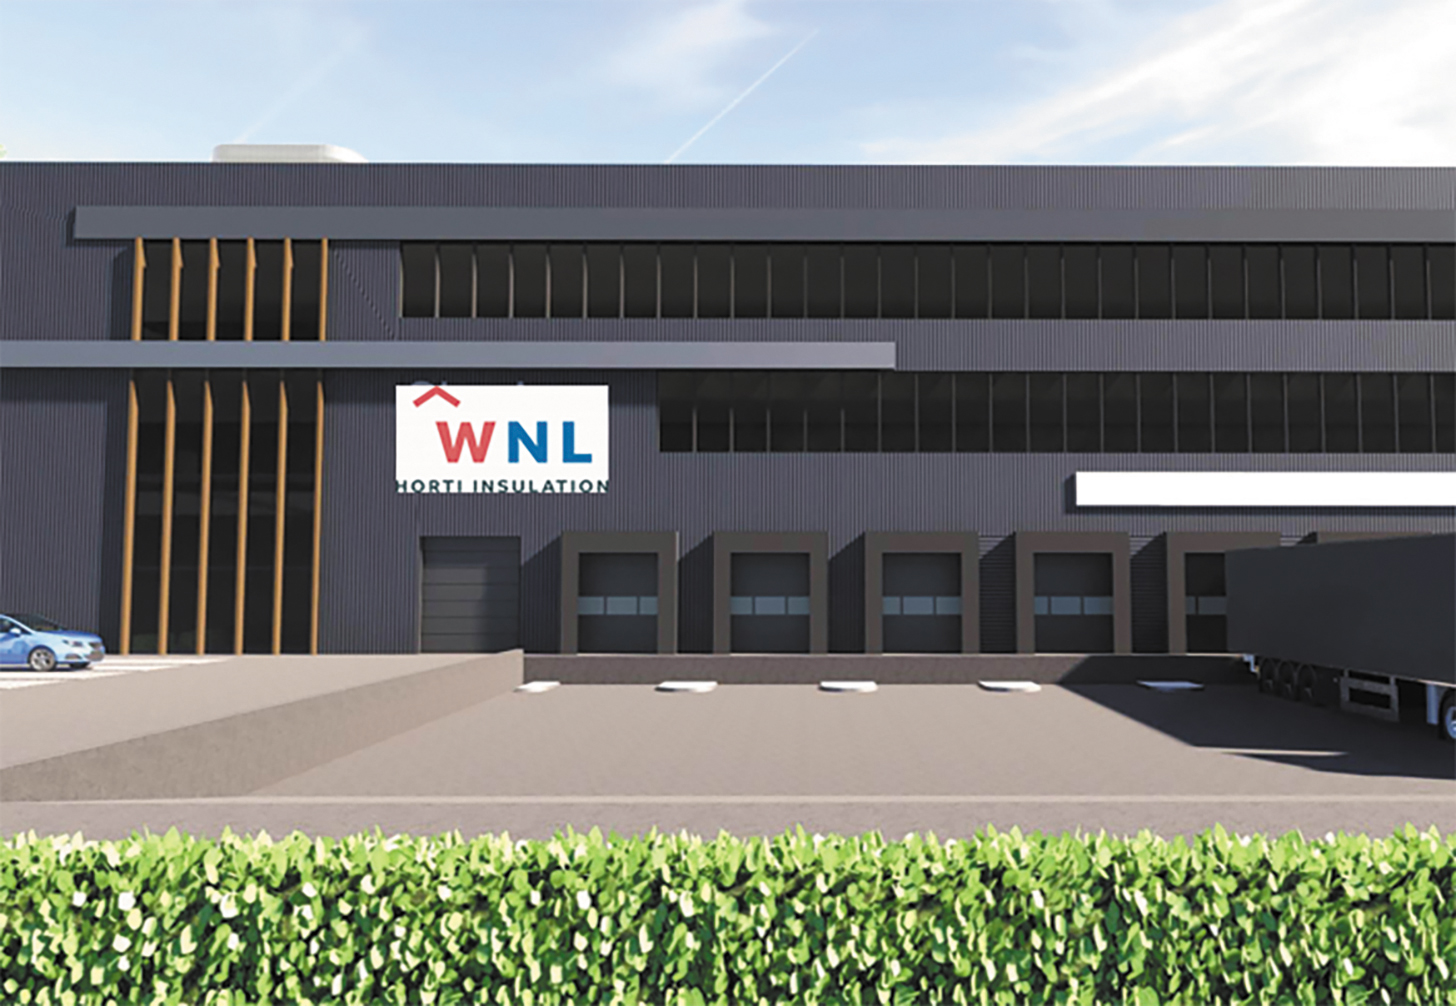 WNL Horti Insulation in 2023 naar Honderdland